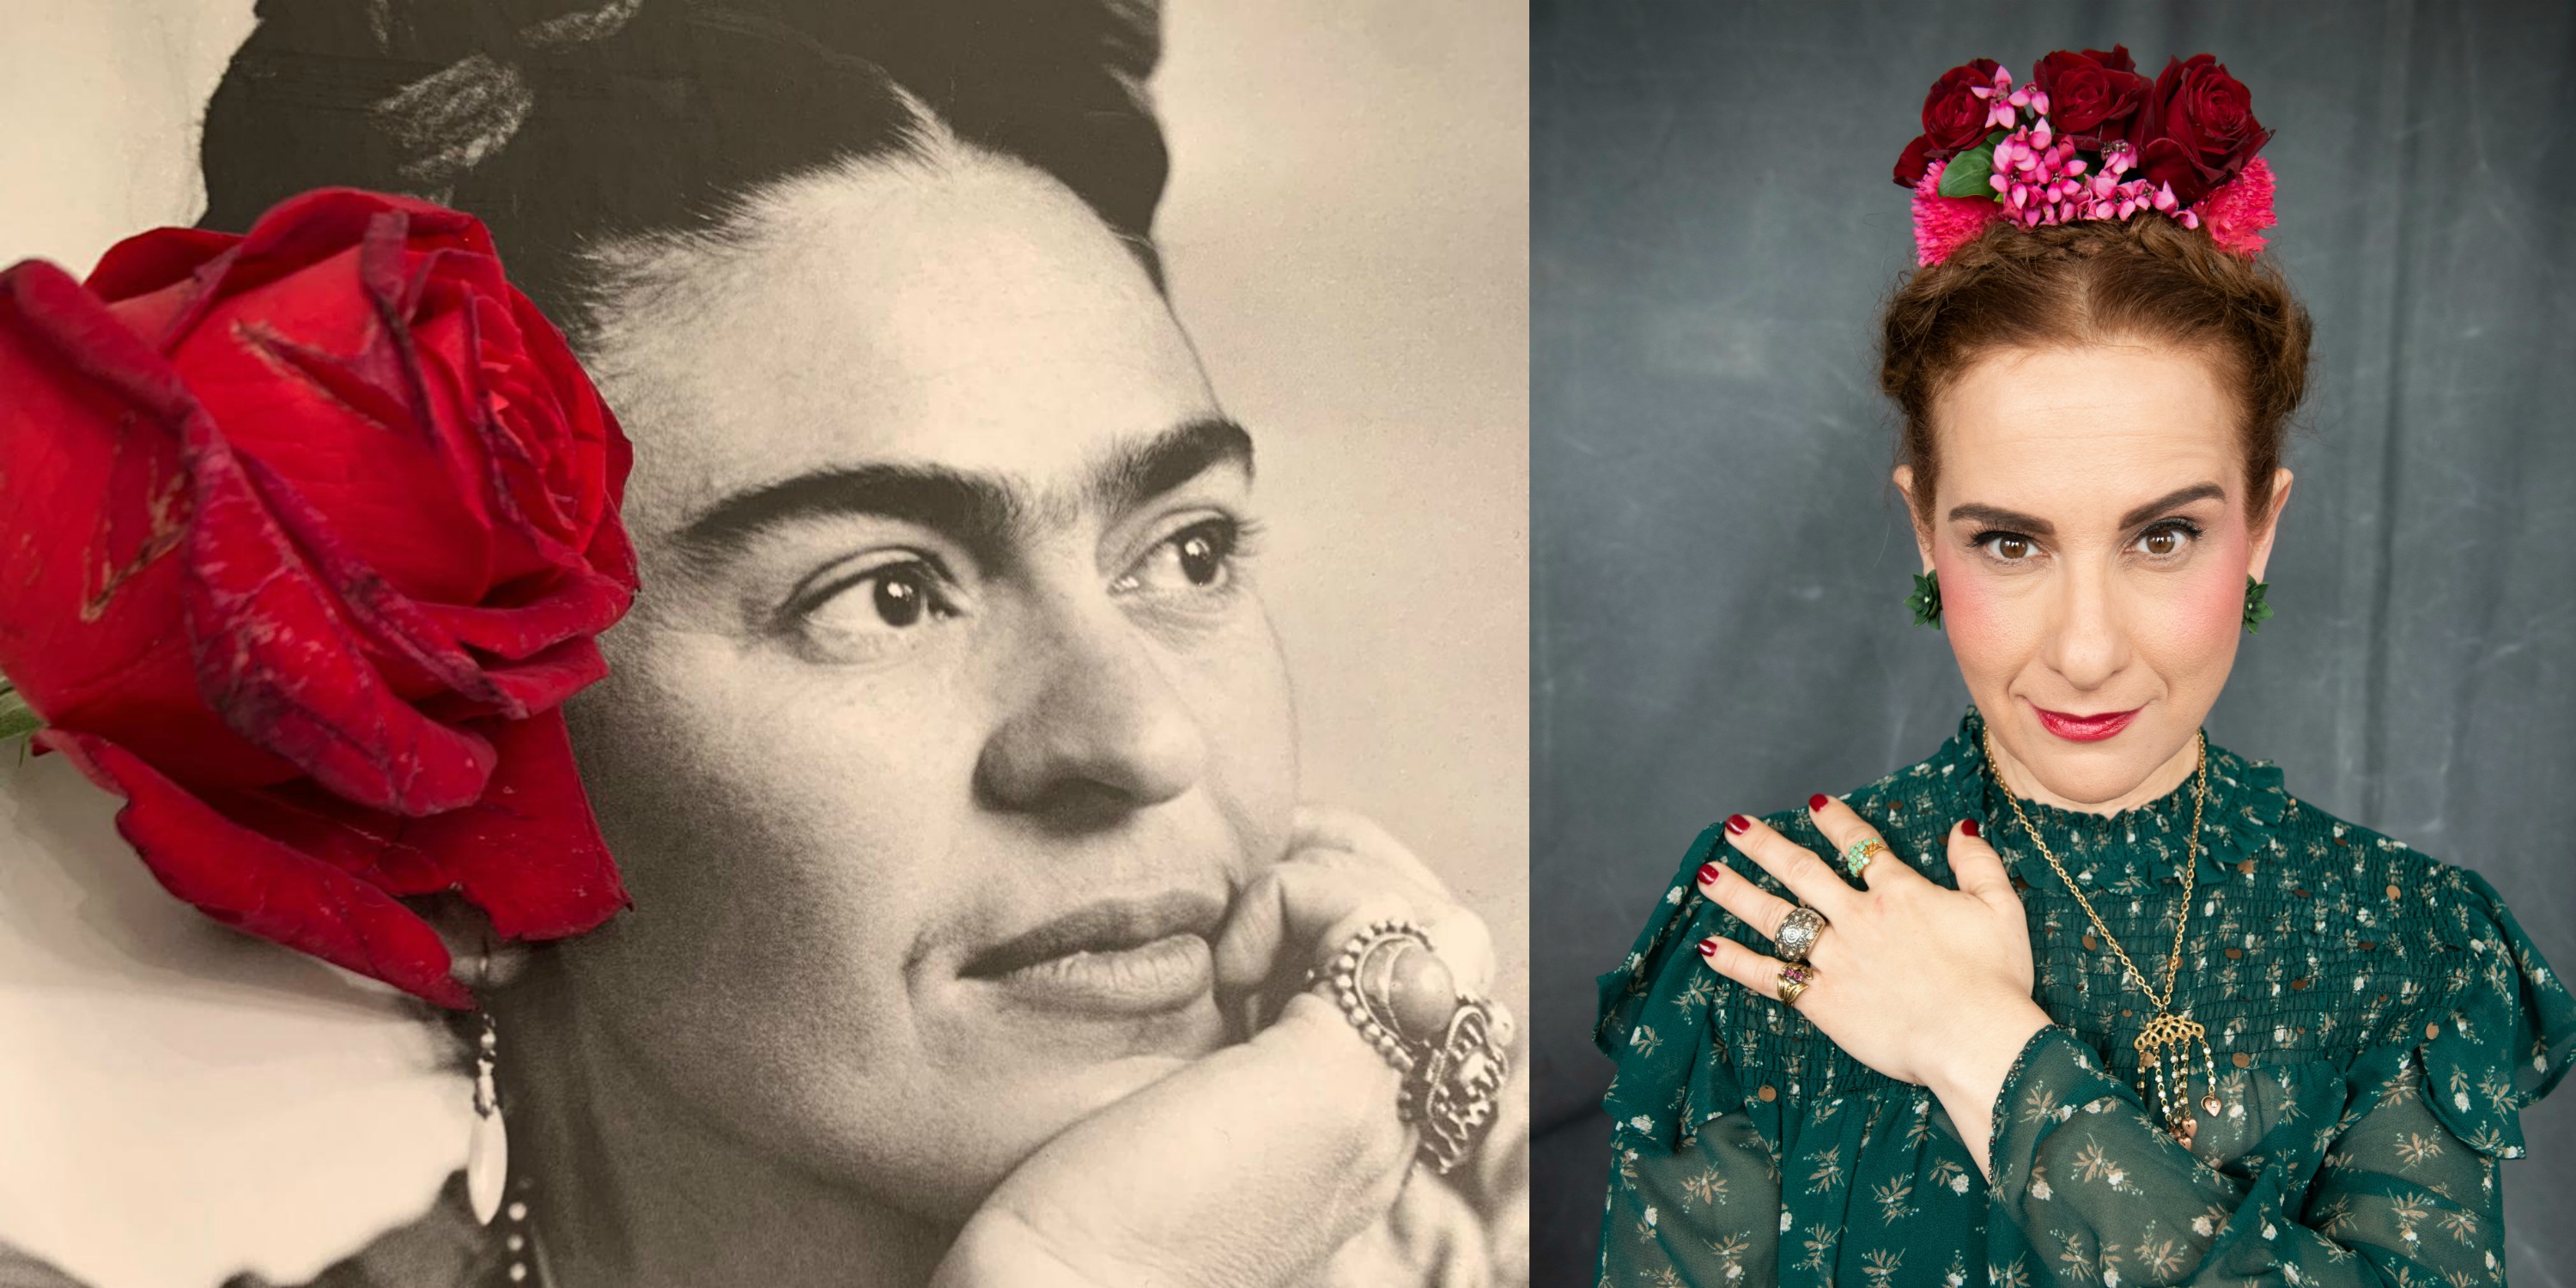 תמרי סלונים ליבס מתוך הבלוג https://tamariandme.com/ בפוסט: עיגולים של שמחה עיגולים של כאב בהשארת הציירת פרידה קאלו Frida kahlo. צילום עידו לביא (מלבד התמונה של פרידה מהספר Frida Kahlo at home), סטיילינג הילה חילו עמרני, שיער רביד פלג, איפור מילי מזרחי